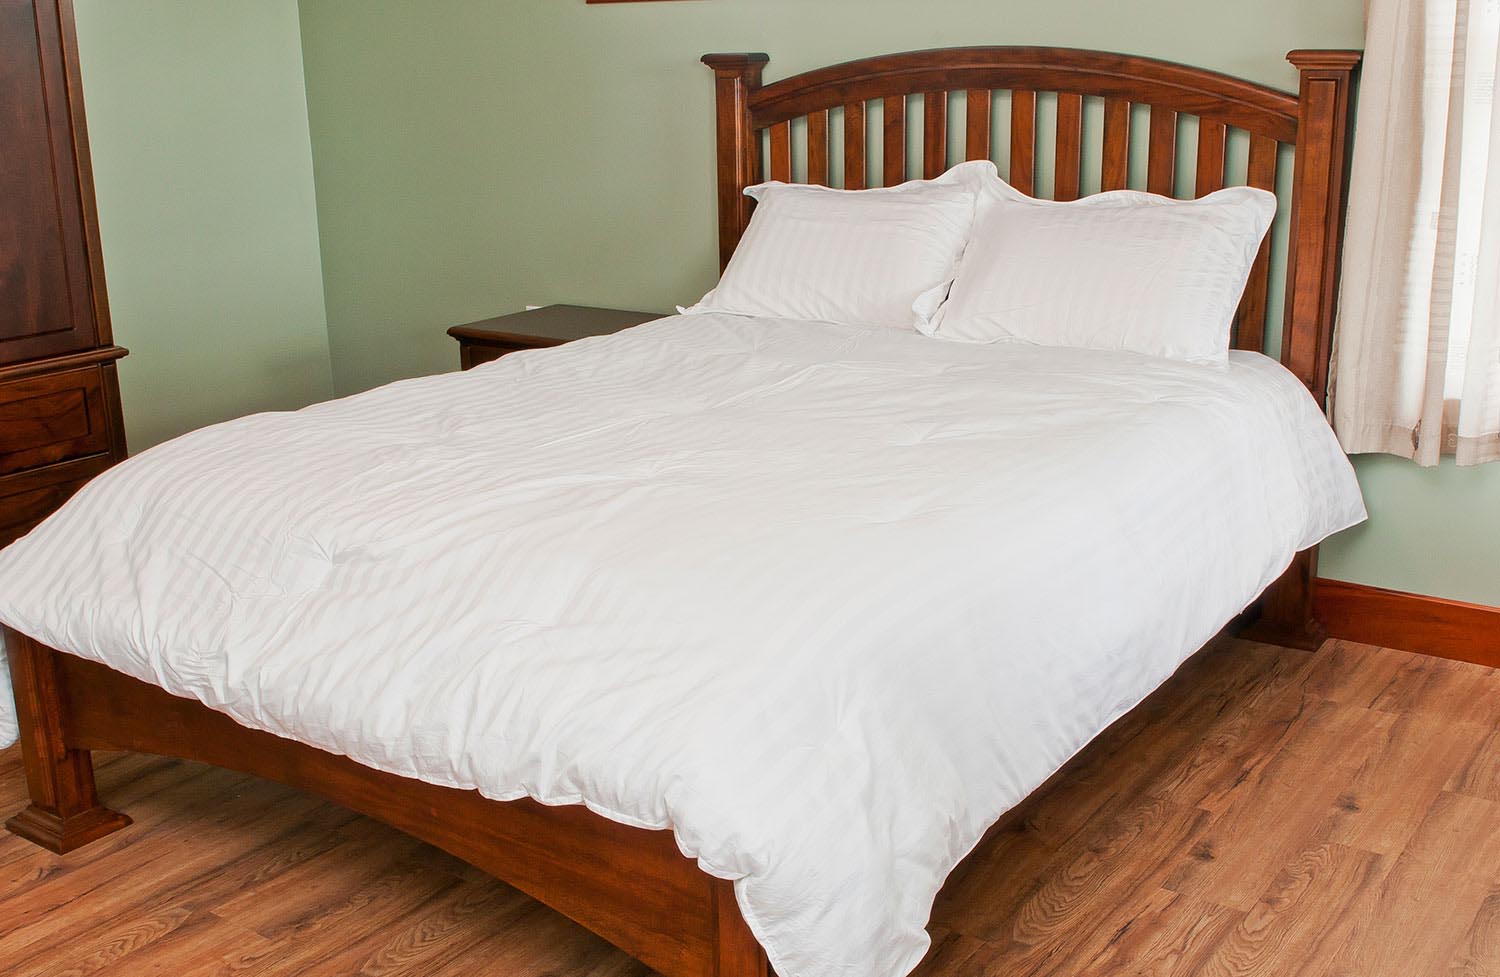 Custom figured mahogany queen bed